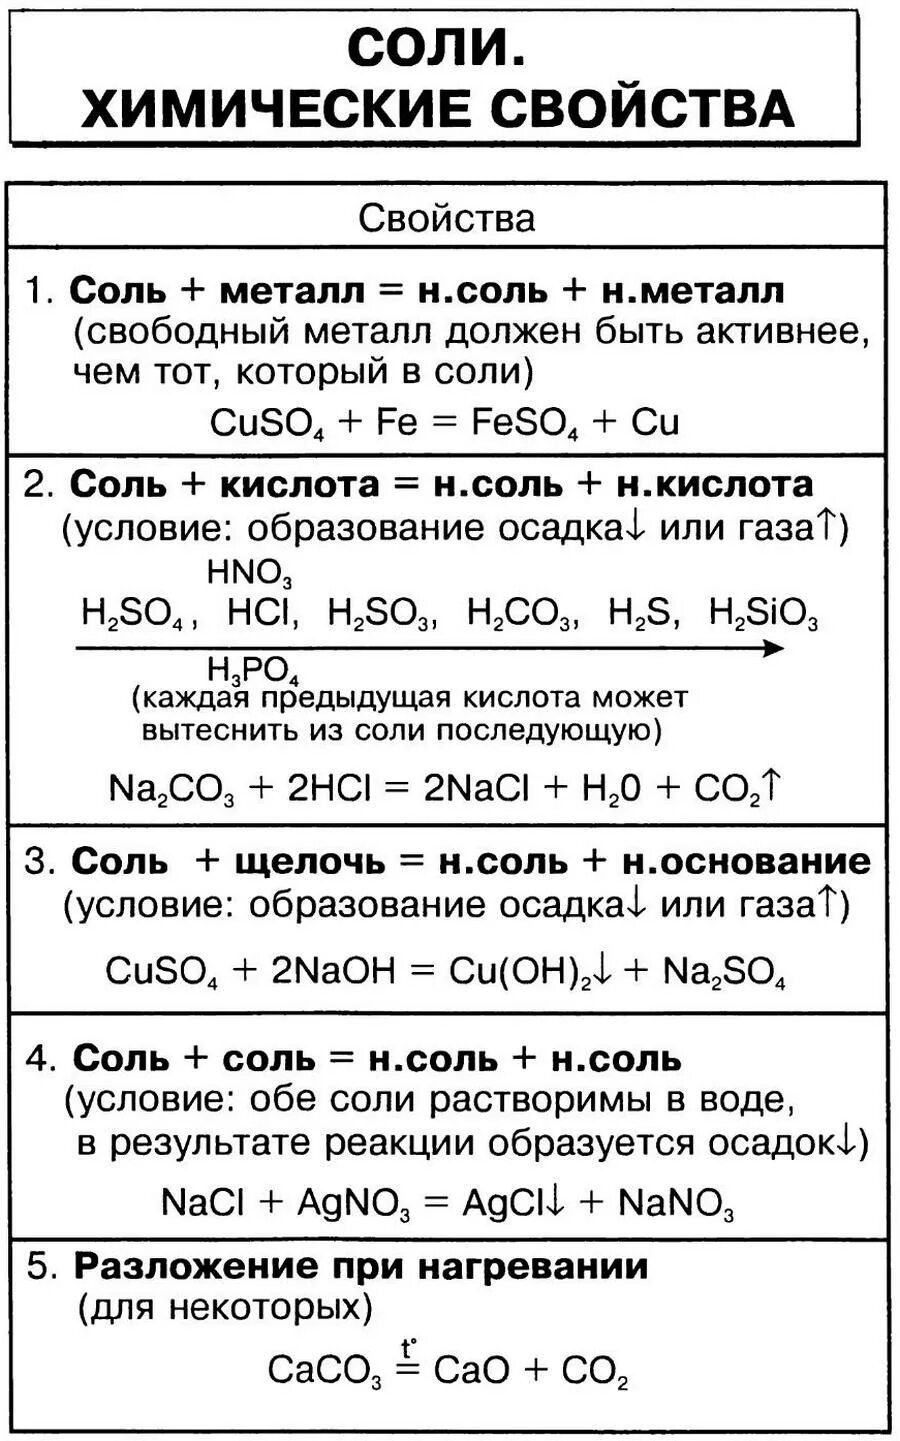 Химические свойства солей 8 класс химия таблица. Свойства солей химия 8 класс. Соли химические свойства 8 класс таблица. Химические свойства солей 8 класс. Химические свойства средних солей 8 класс